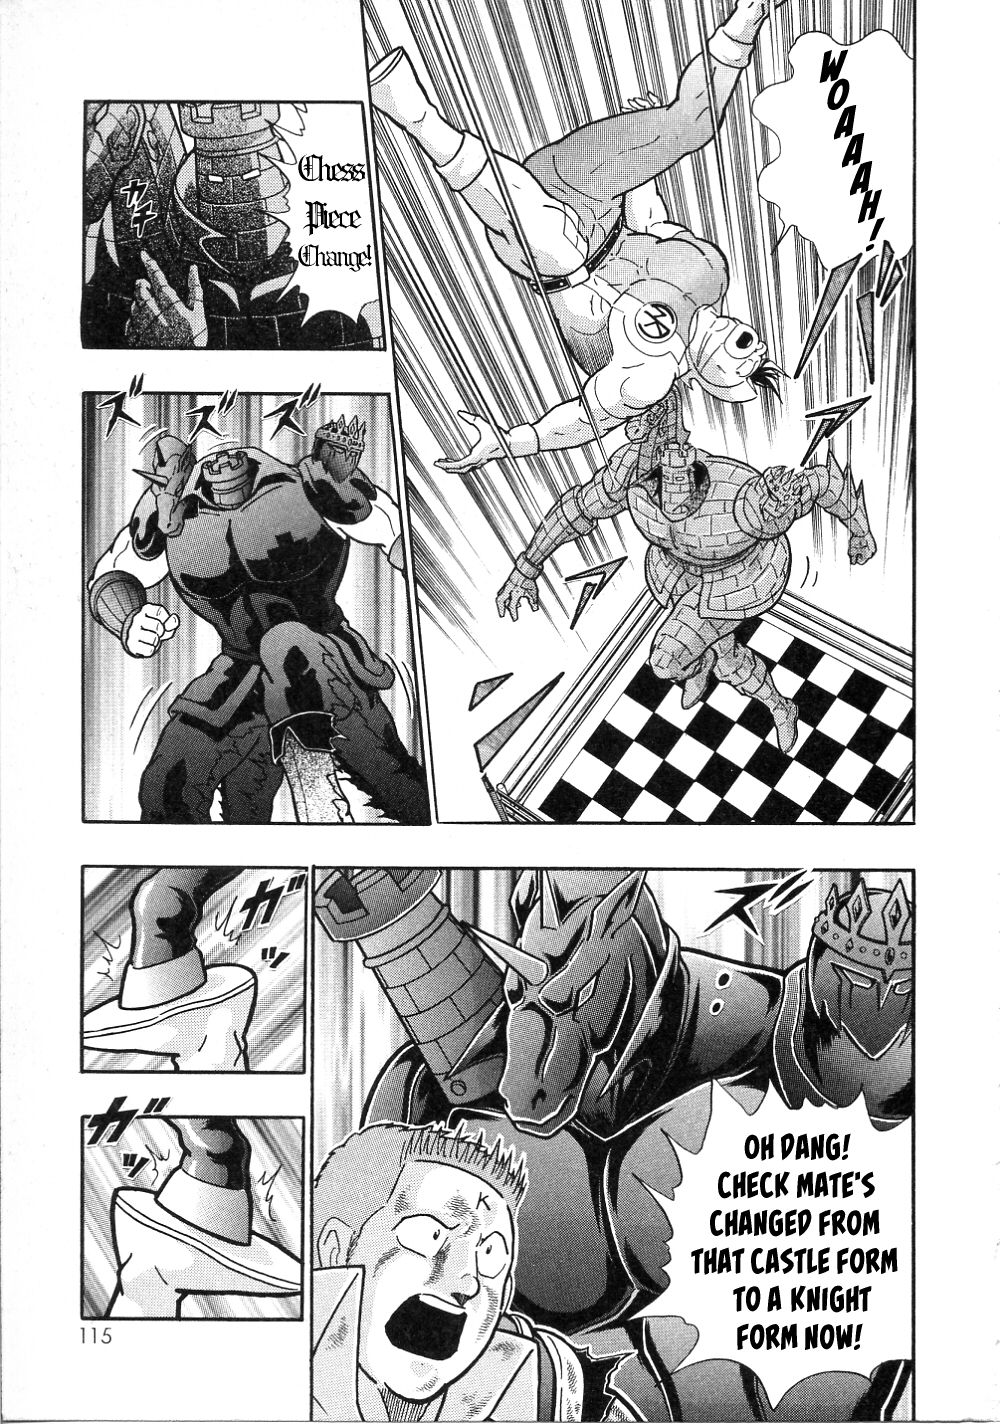 Kinnikuman II Sei: All Choujin Daishingeki Vol. 1 Ch. 10 Checkmate's 3 Terrifying Transformations!